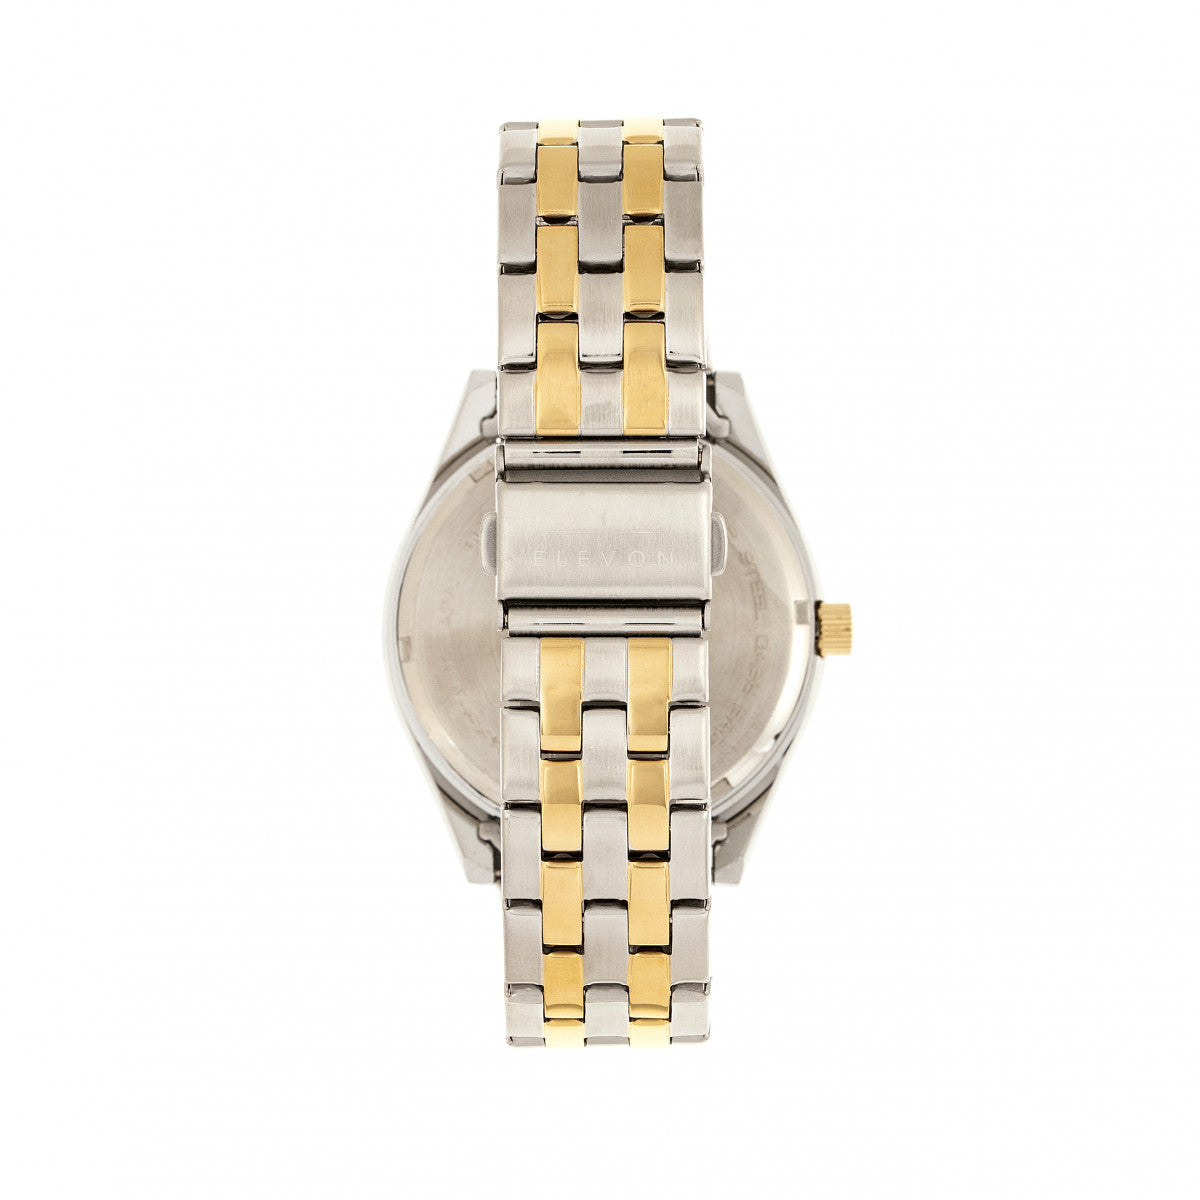 Elevon Gann Bracelet Watch w/Day/Date - Gold/Silver - ELE106-4